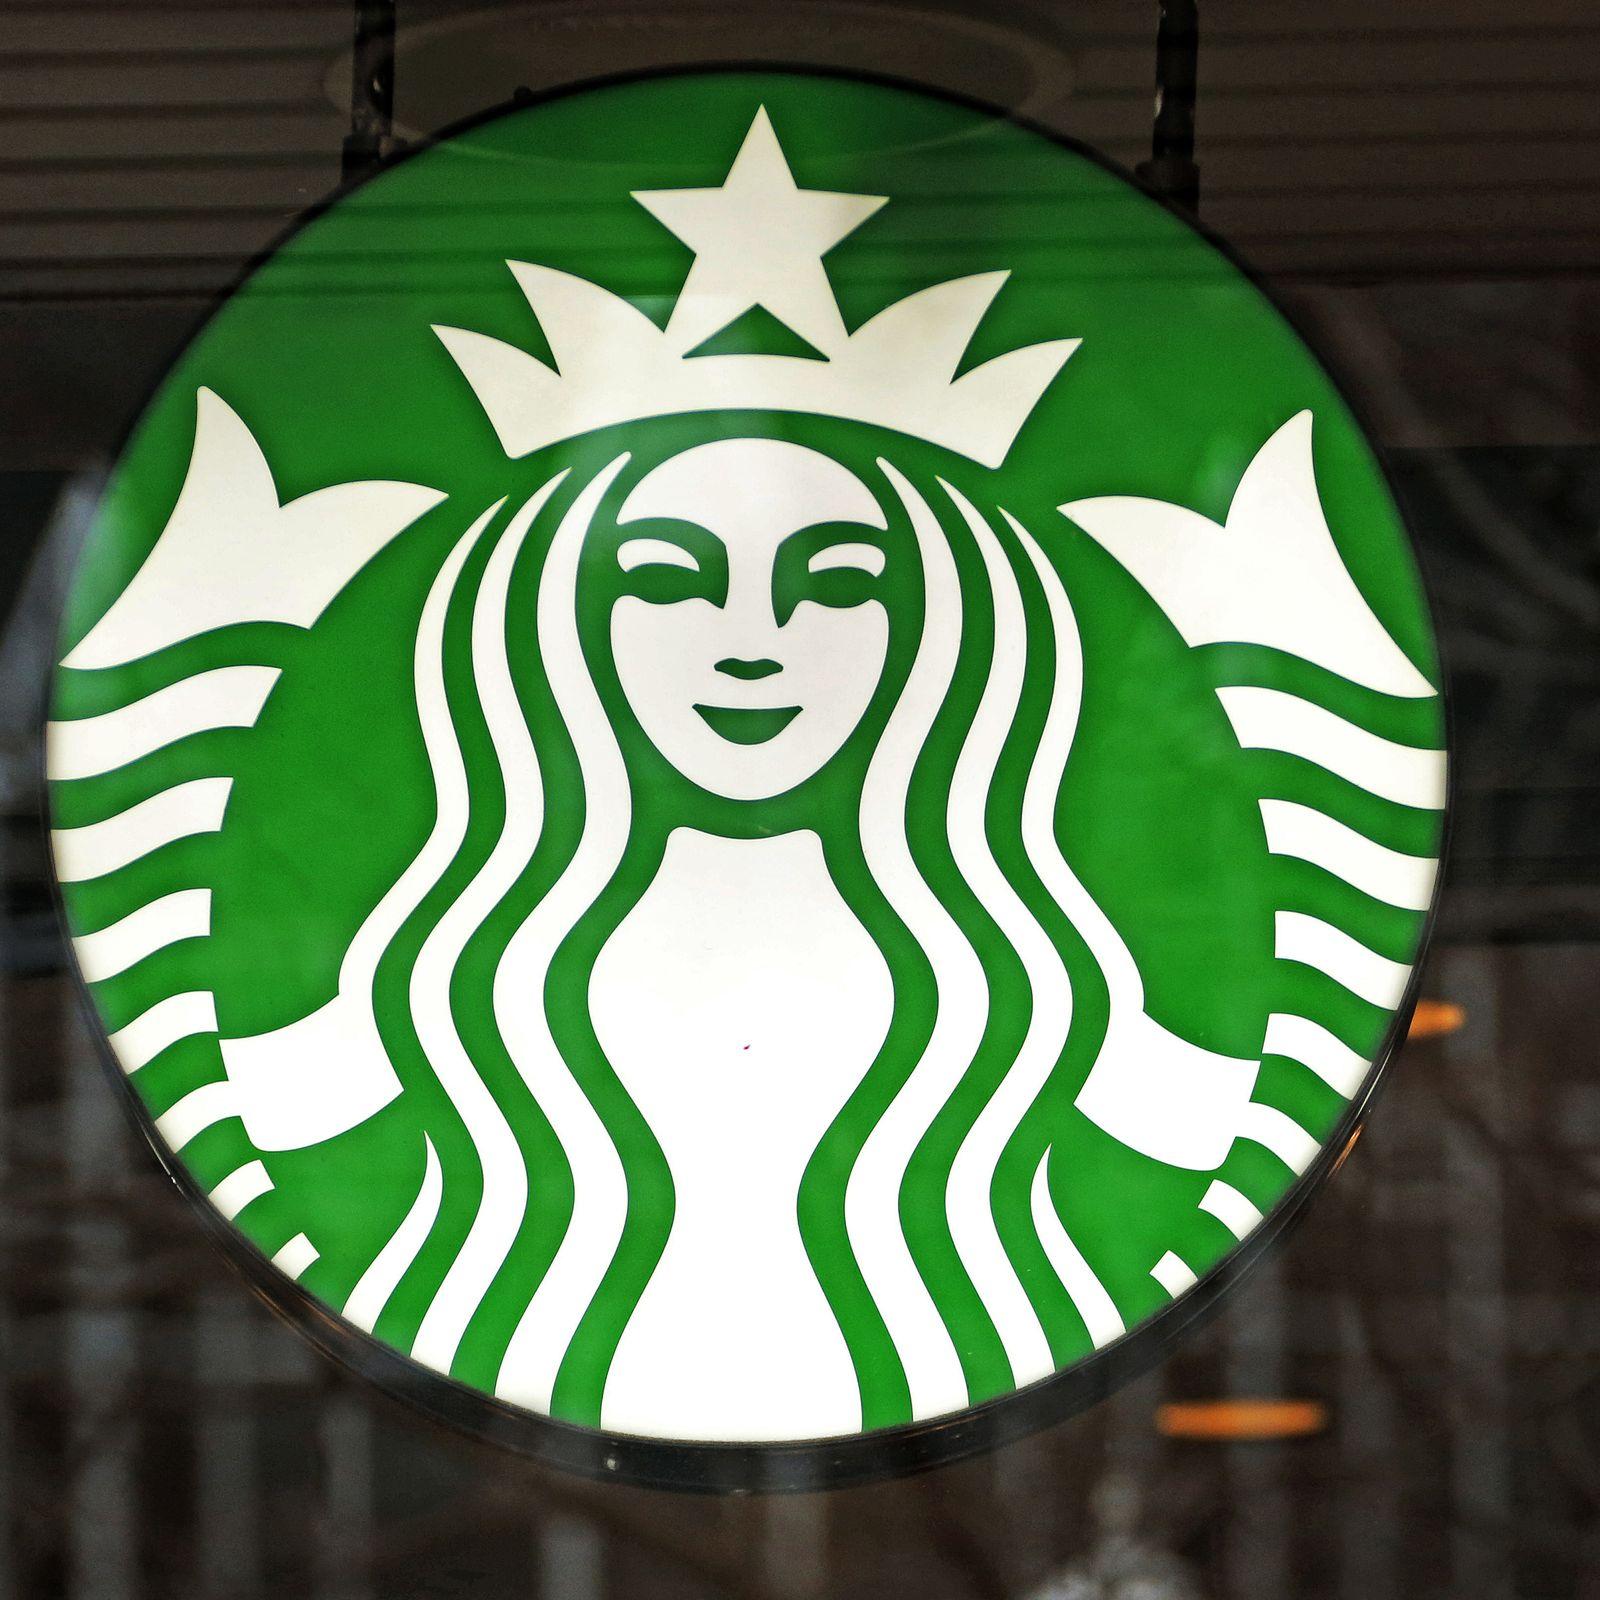 Fake Starbucks Logo - After Starbucks debacle, 4chan trolls make fake coupons enticing ...